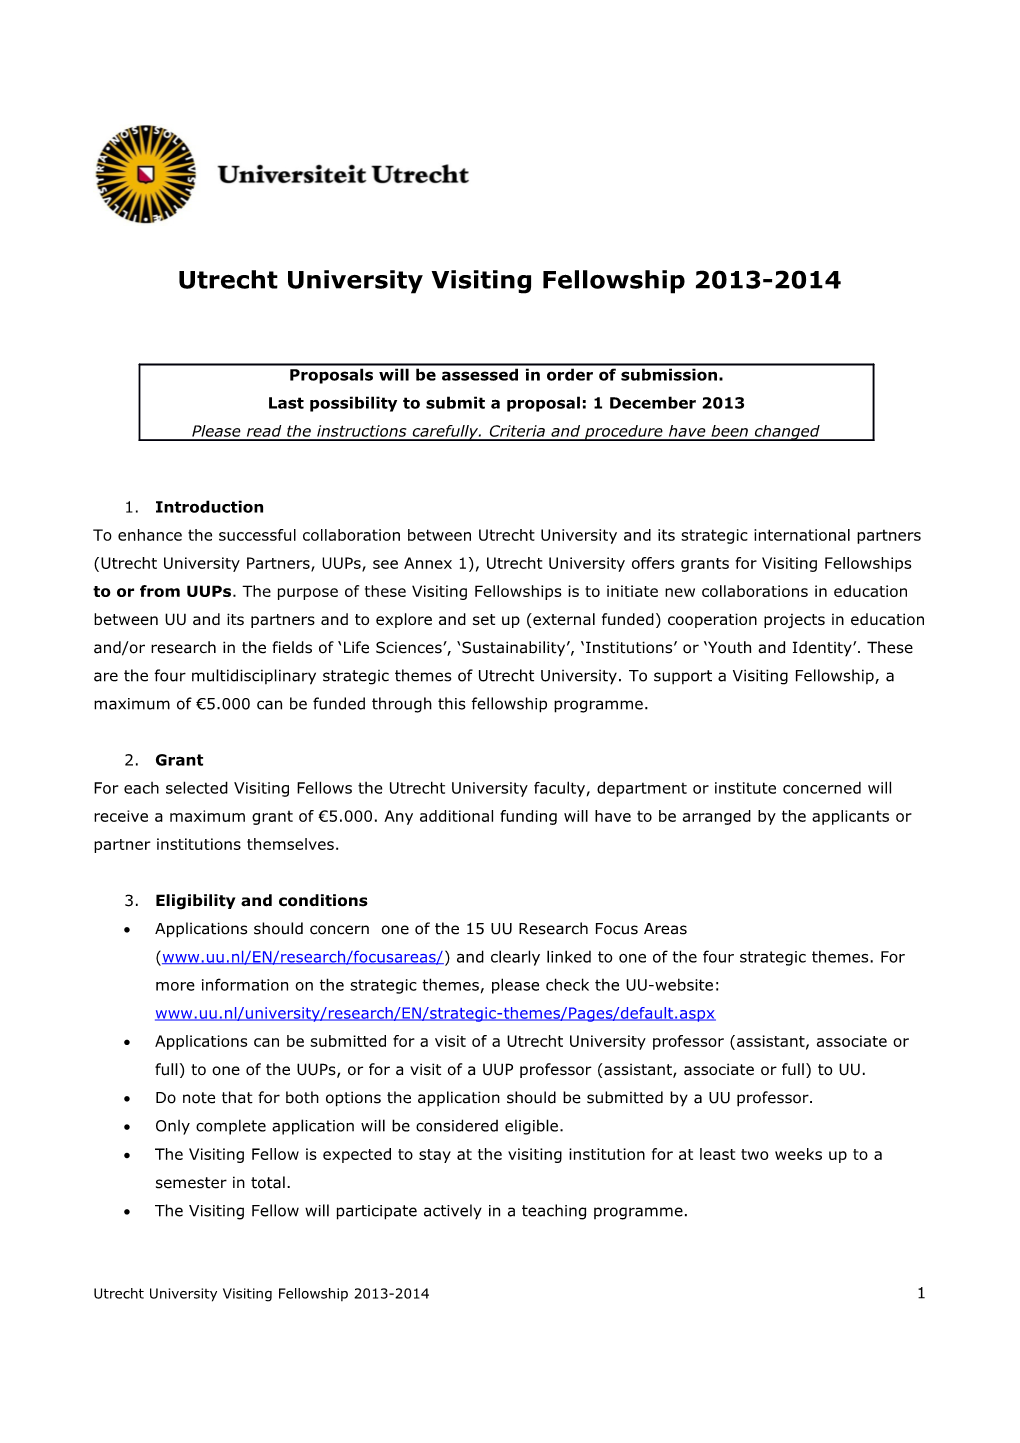 Utrecht University Visiting Fellowship 2013-2014